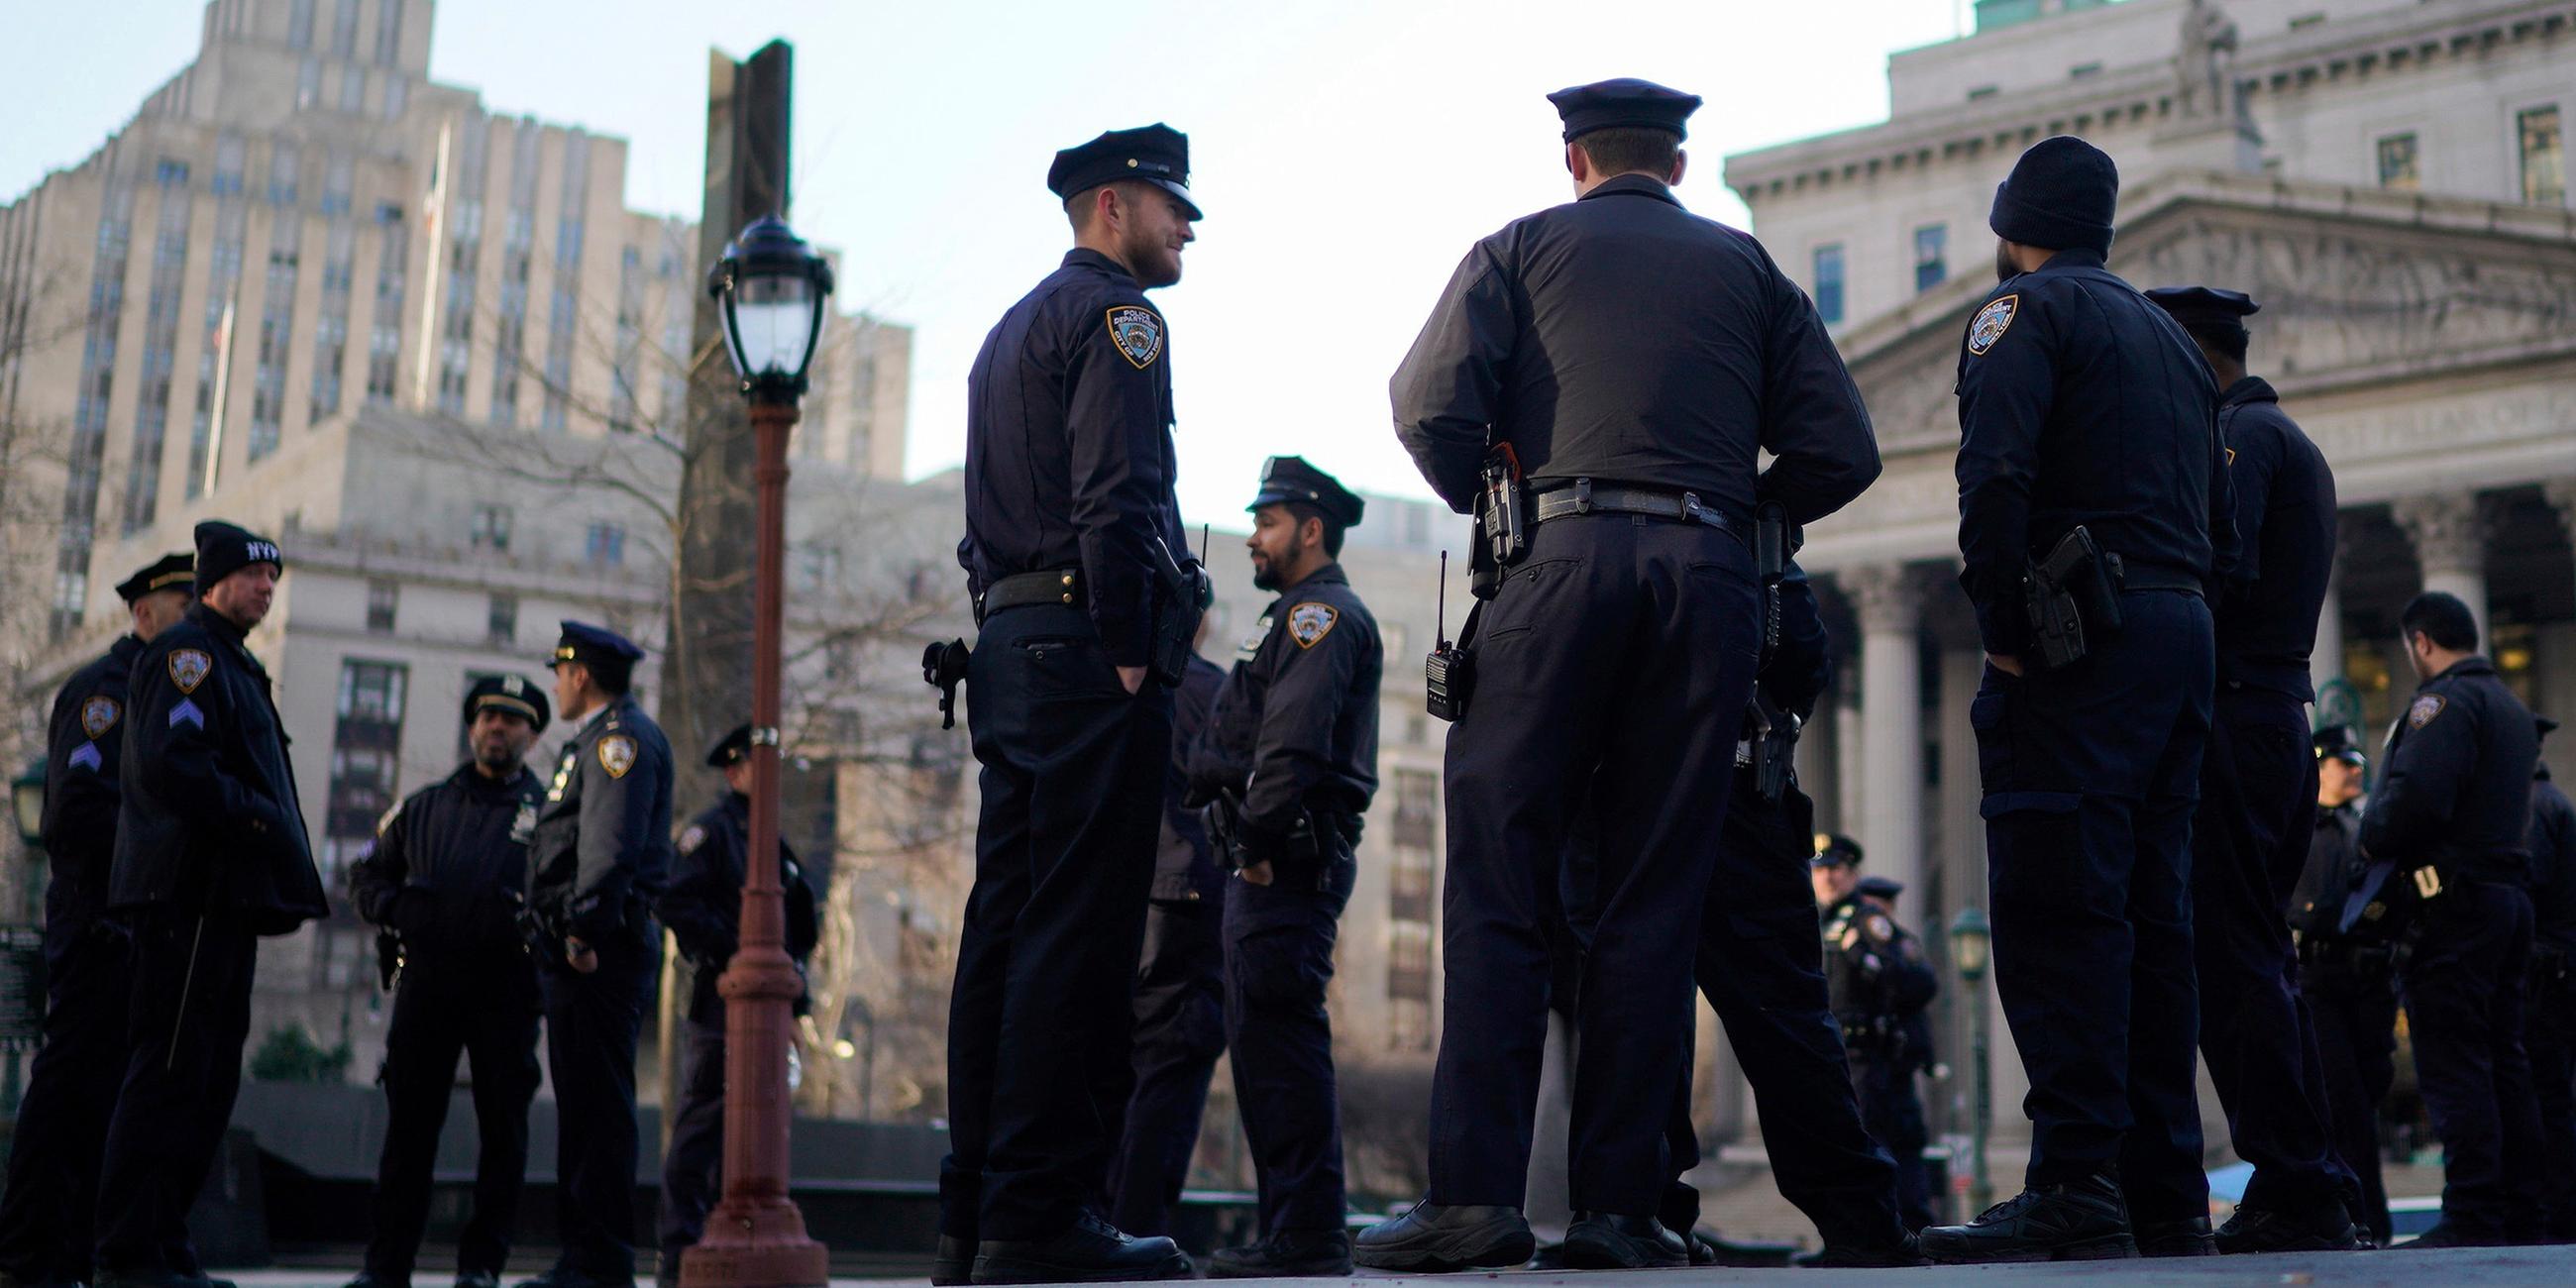 Polizisten in New York